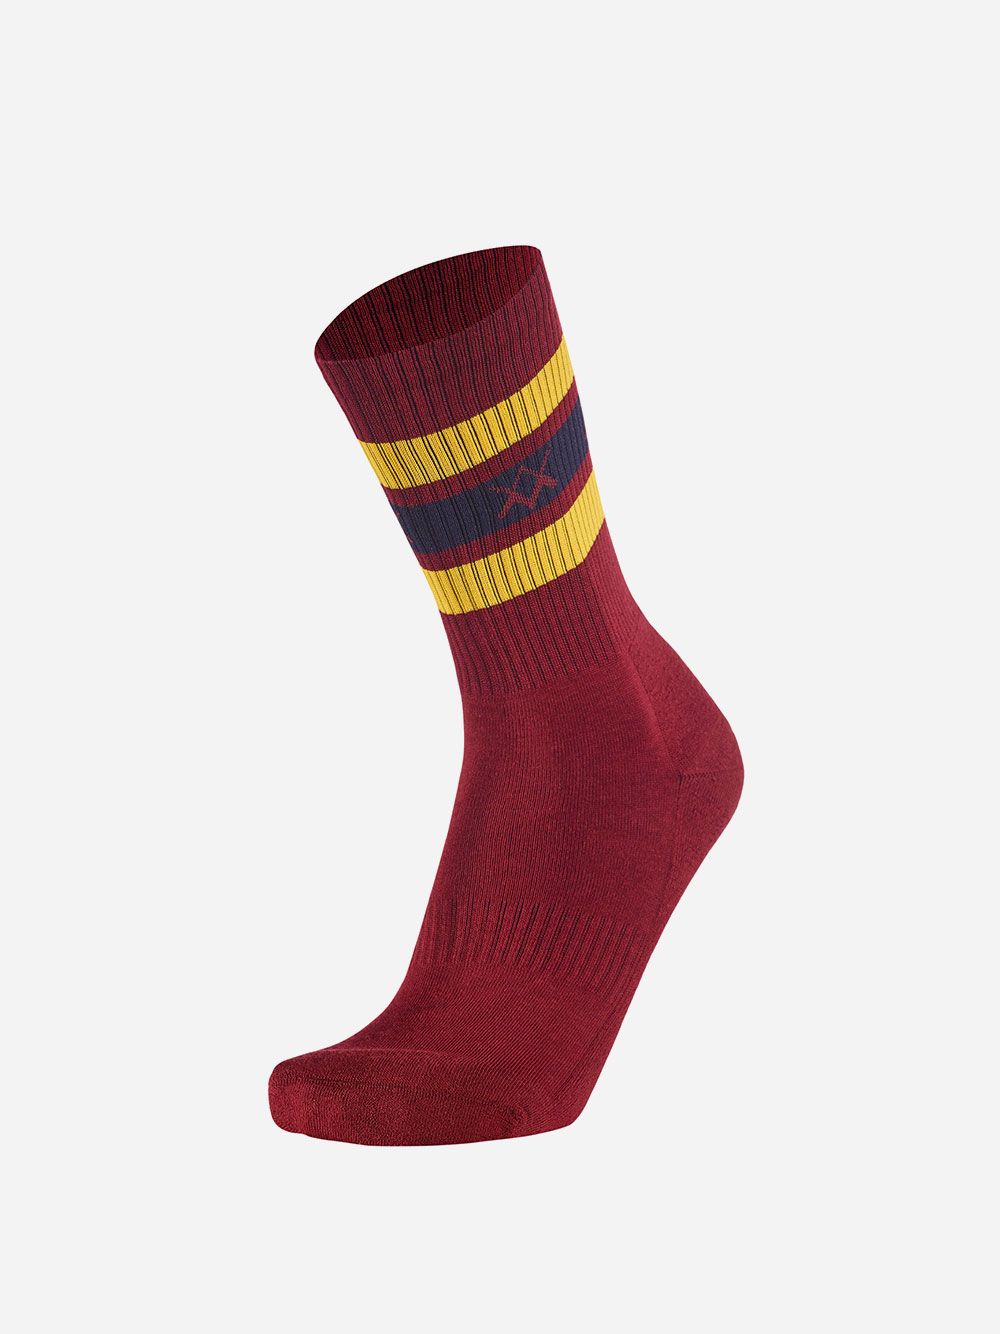 Bordeaux Socks Stripes WM | Westmister 